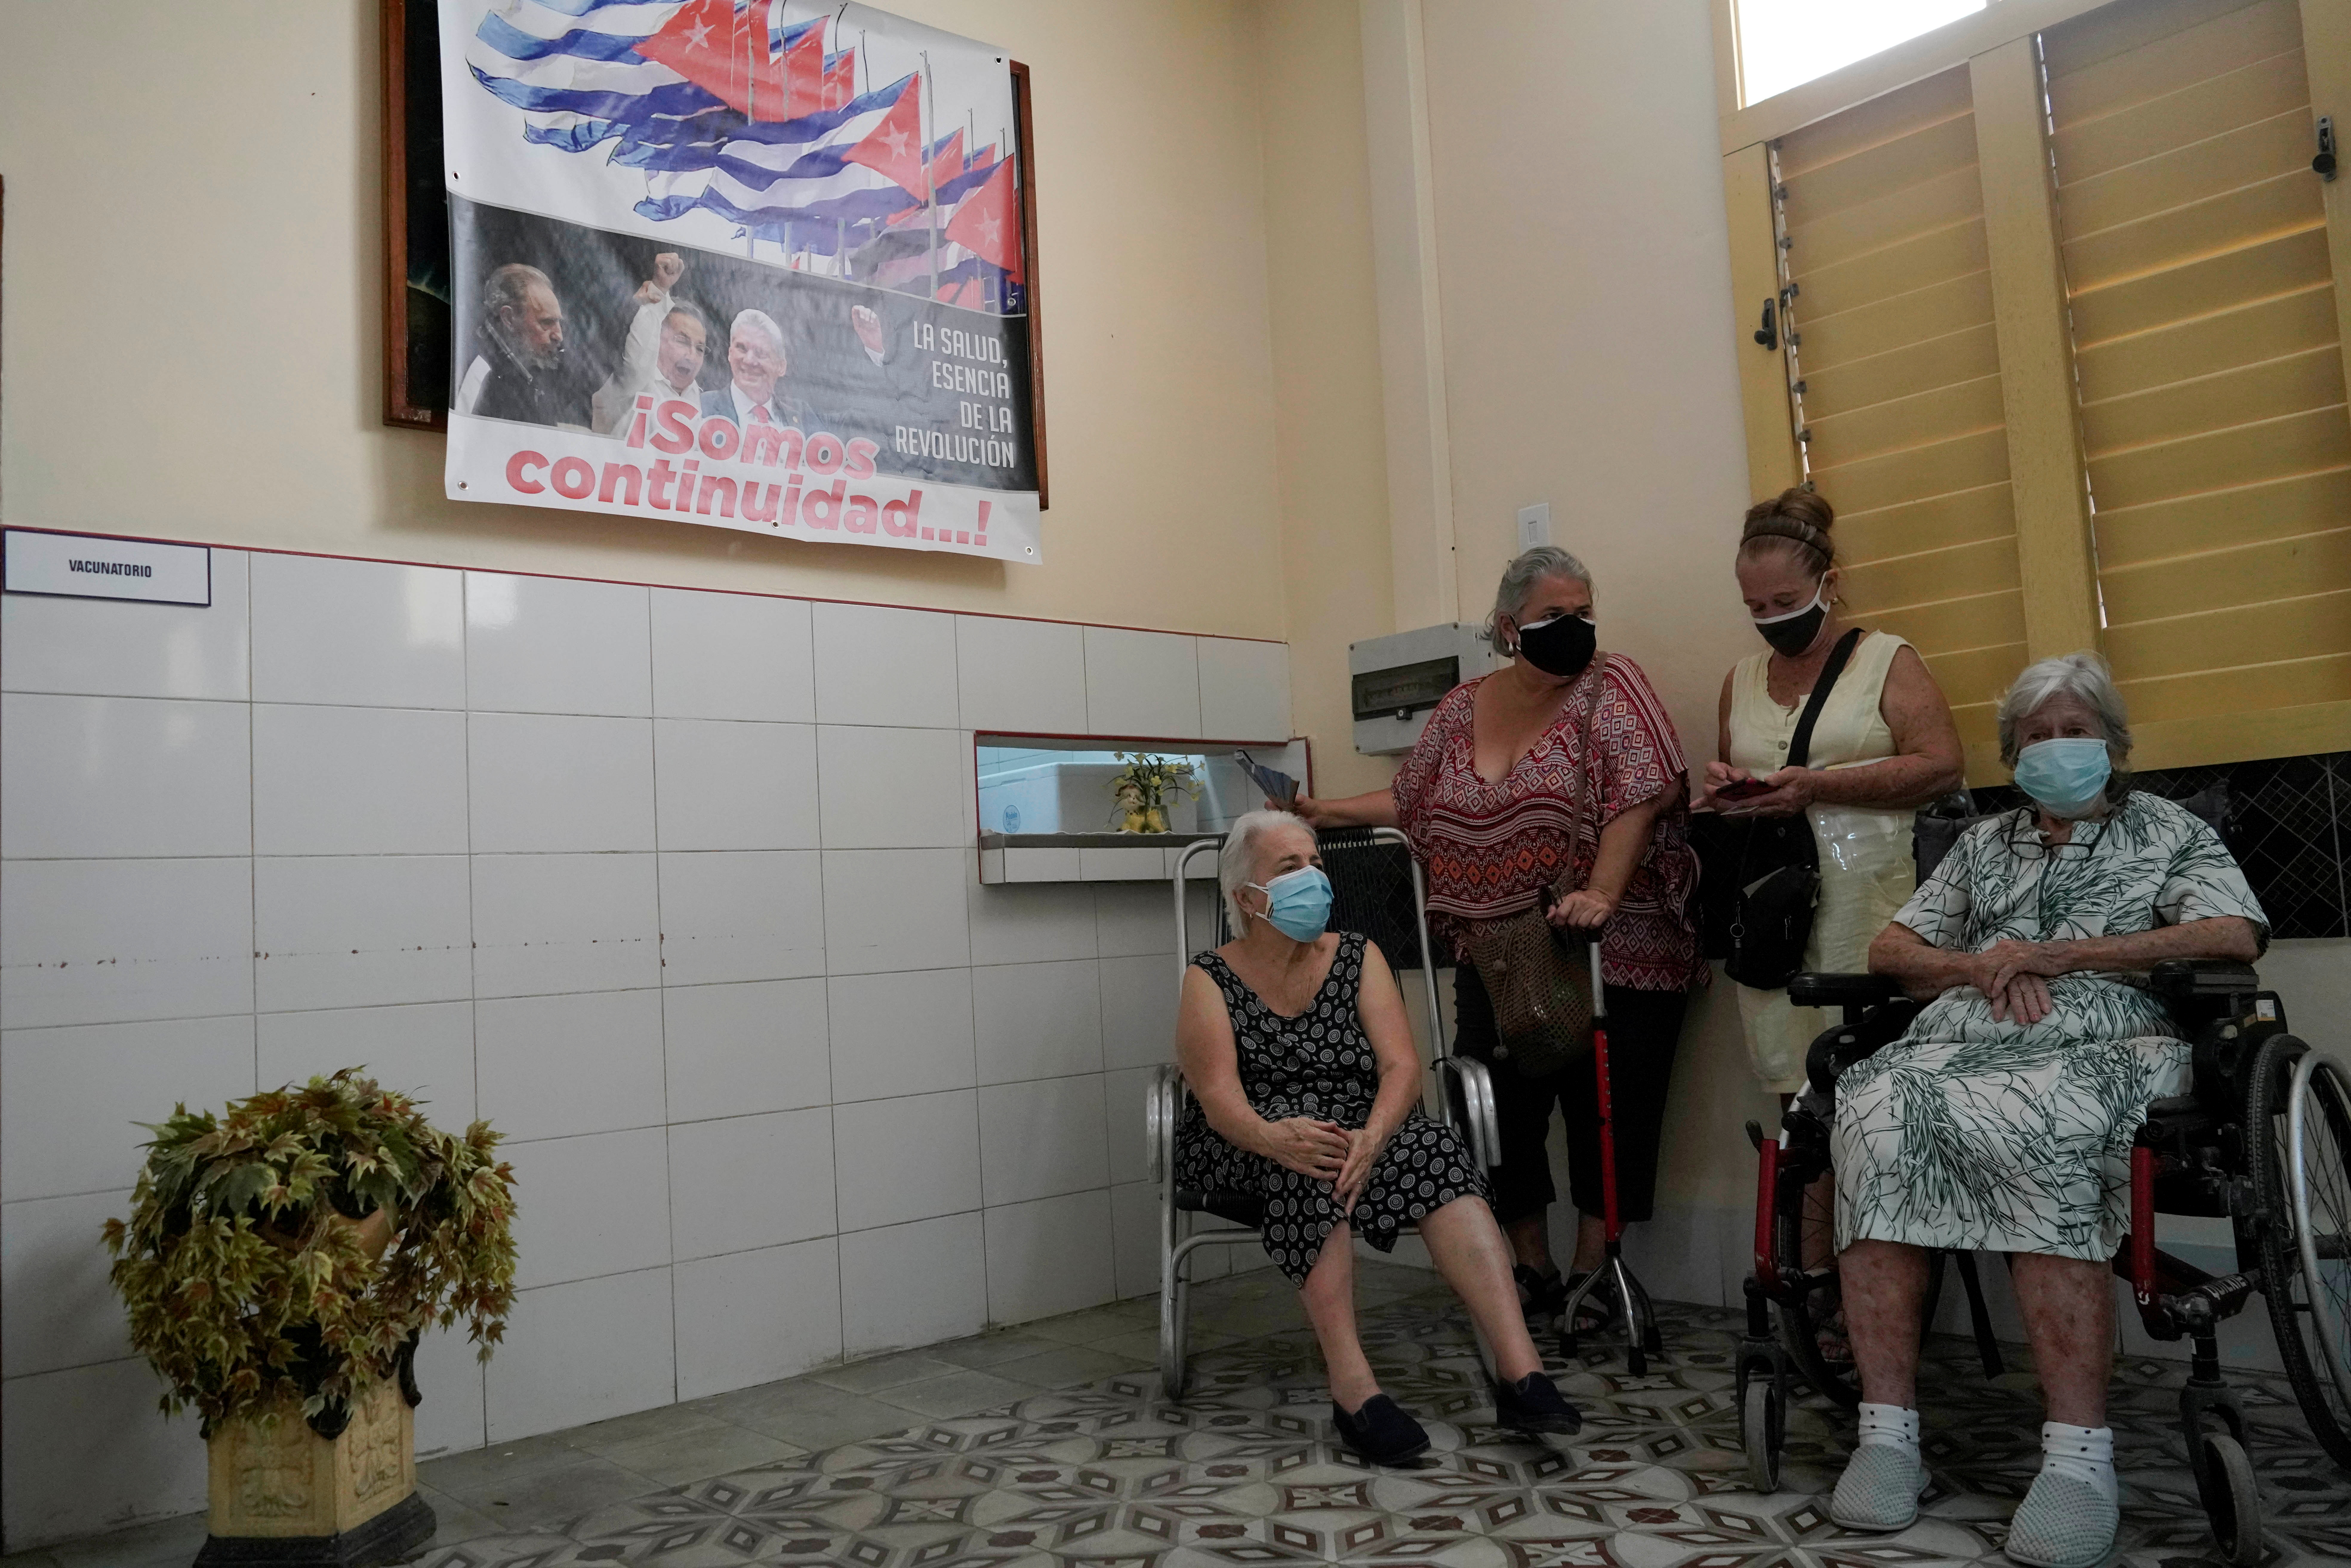 FOTO DE ARCHIVO: Personas esperan después de ser vacunadas contra el coronavirus bajo un cartel que muestra imágenes de Fidel Castro y Miguel Díaz-Canel y la frase "Somos continuidad", en un centro de vacunación en La Habana el 23 de junio de 2021. REUTERS/Alexandre Meneghini